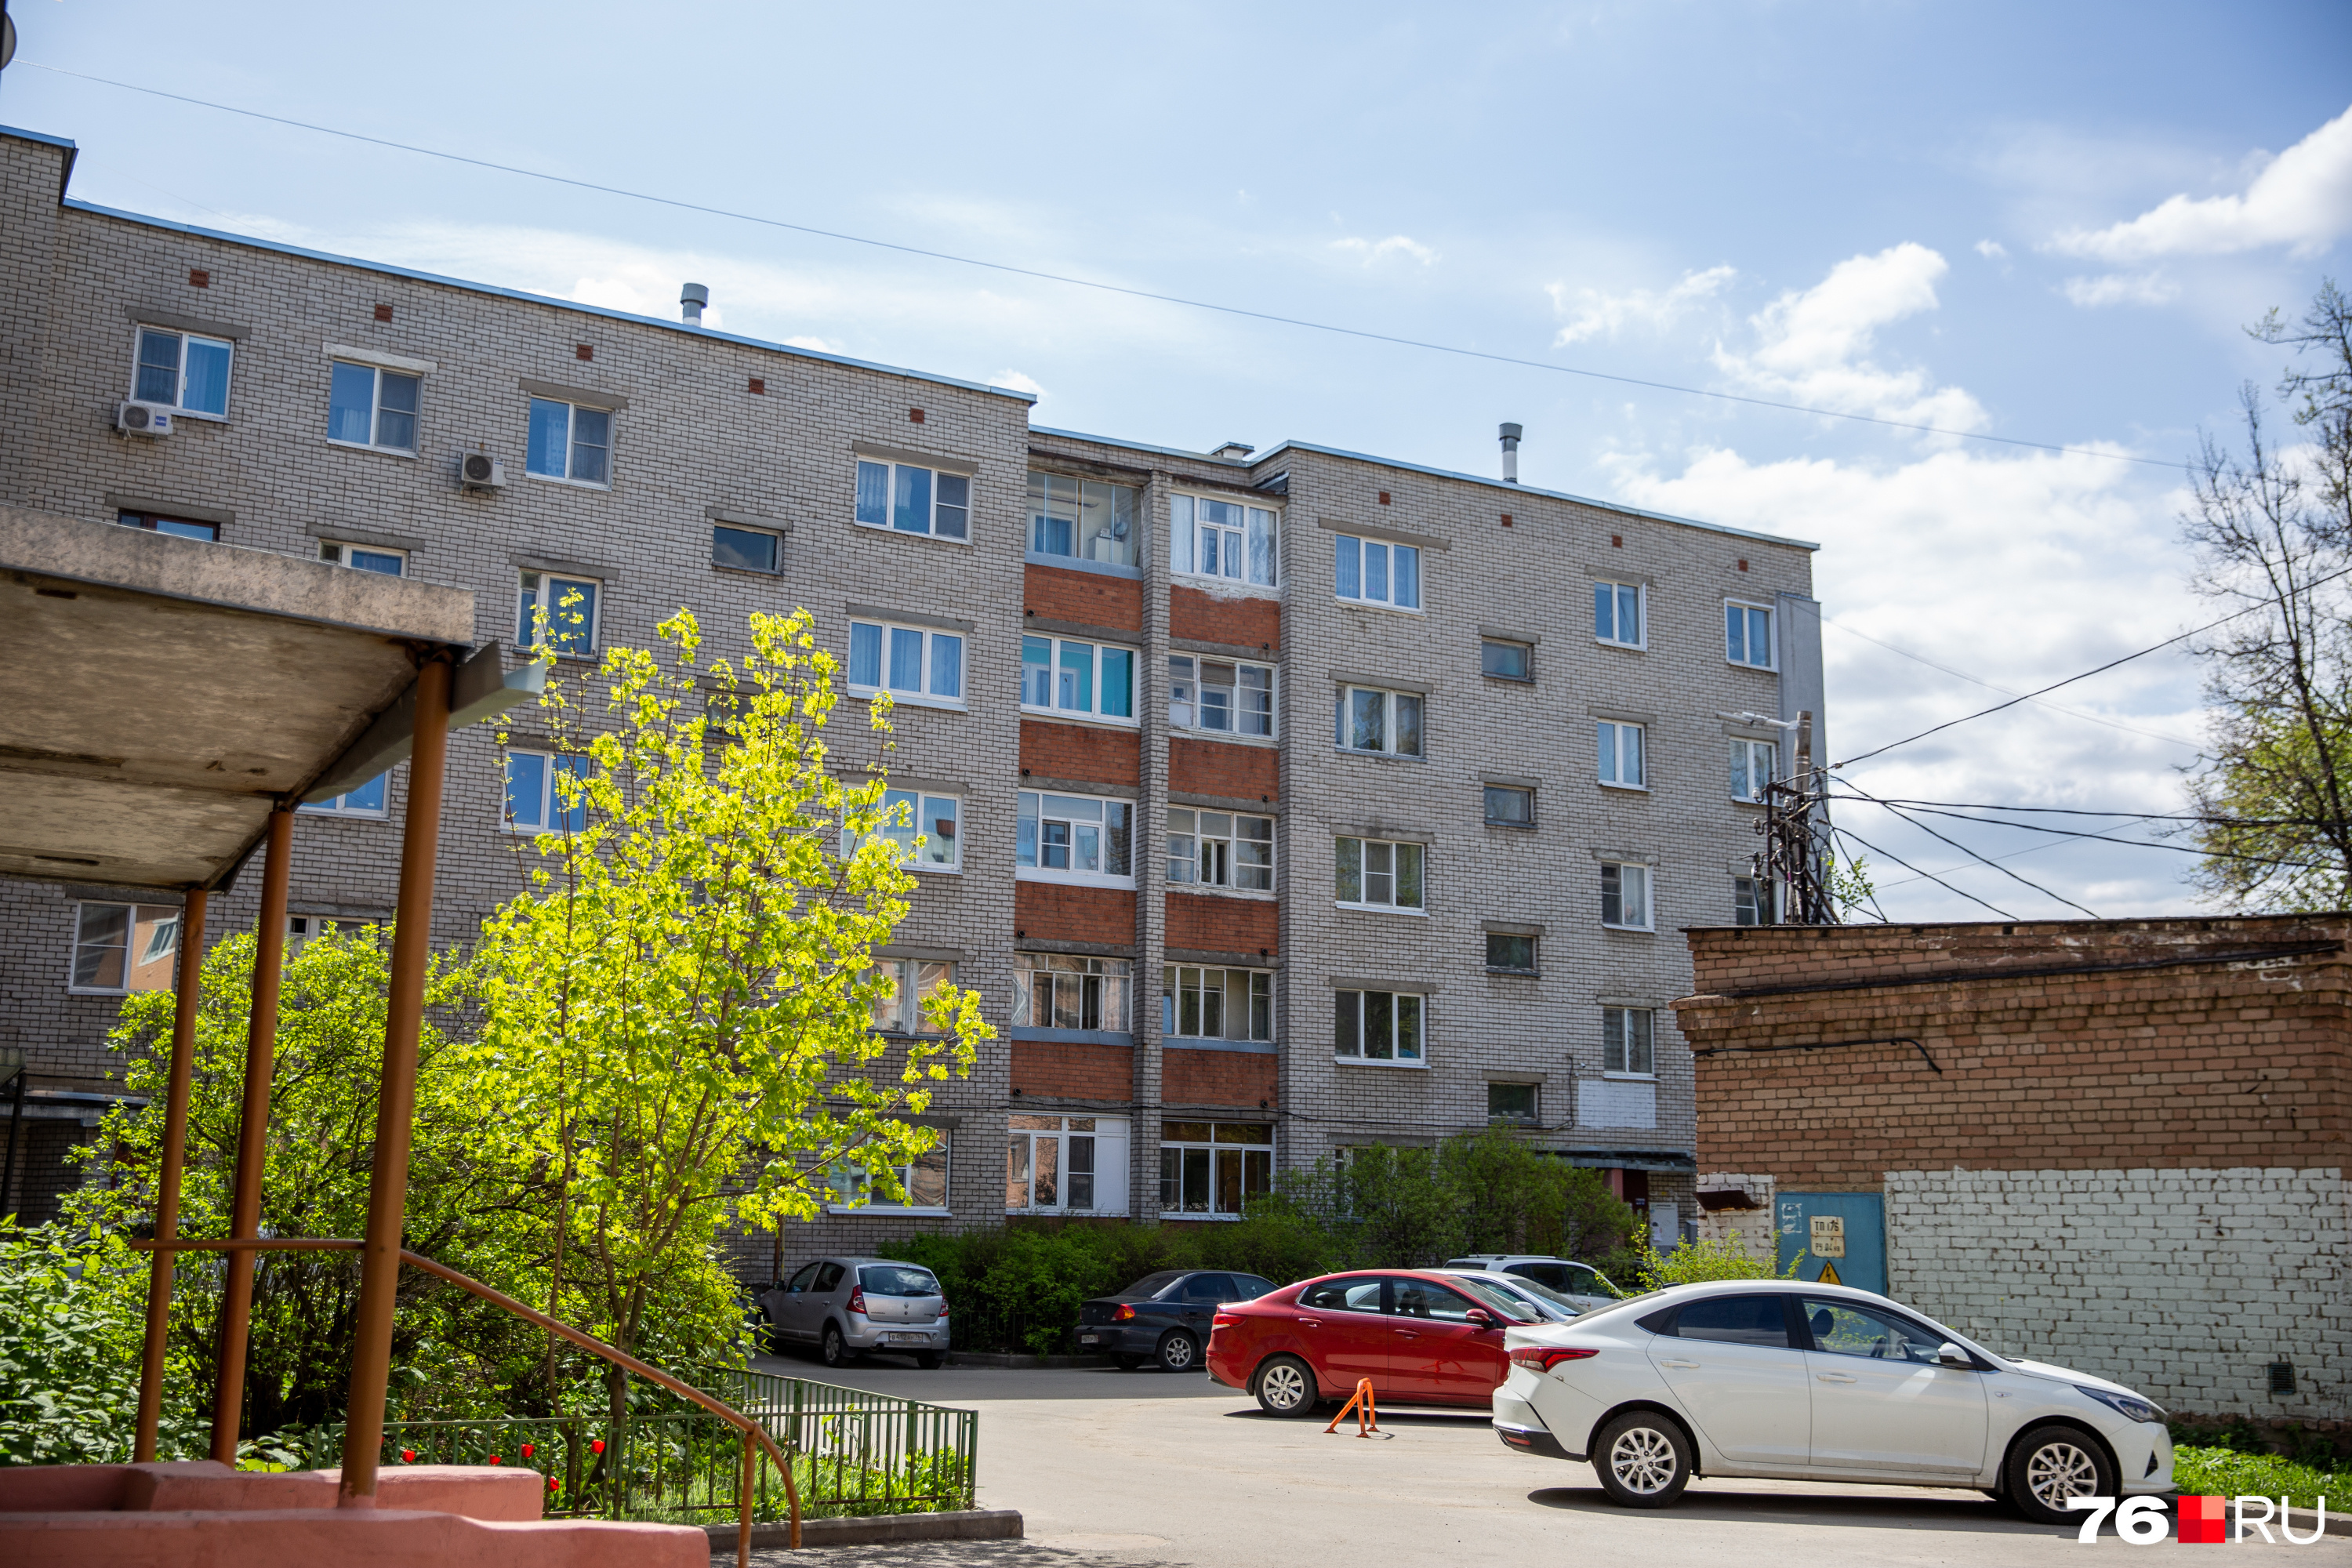 Дом находится в центре Ярославля, в паре минут от Волжской набережной